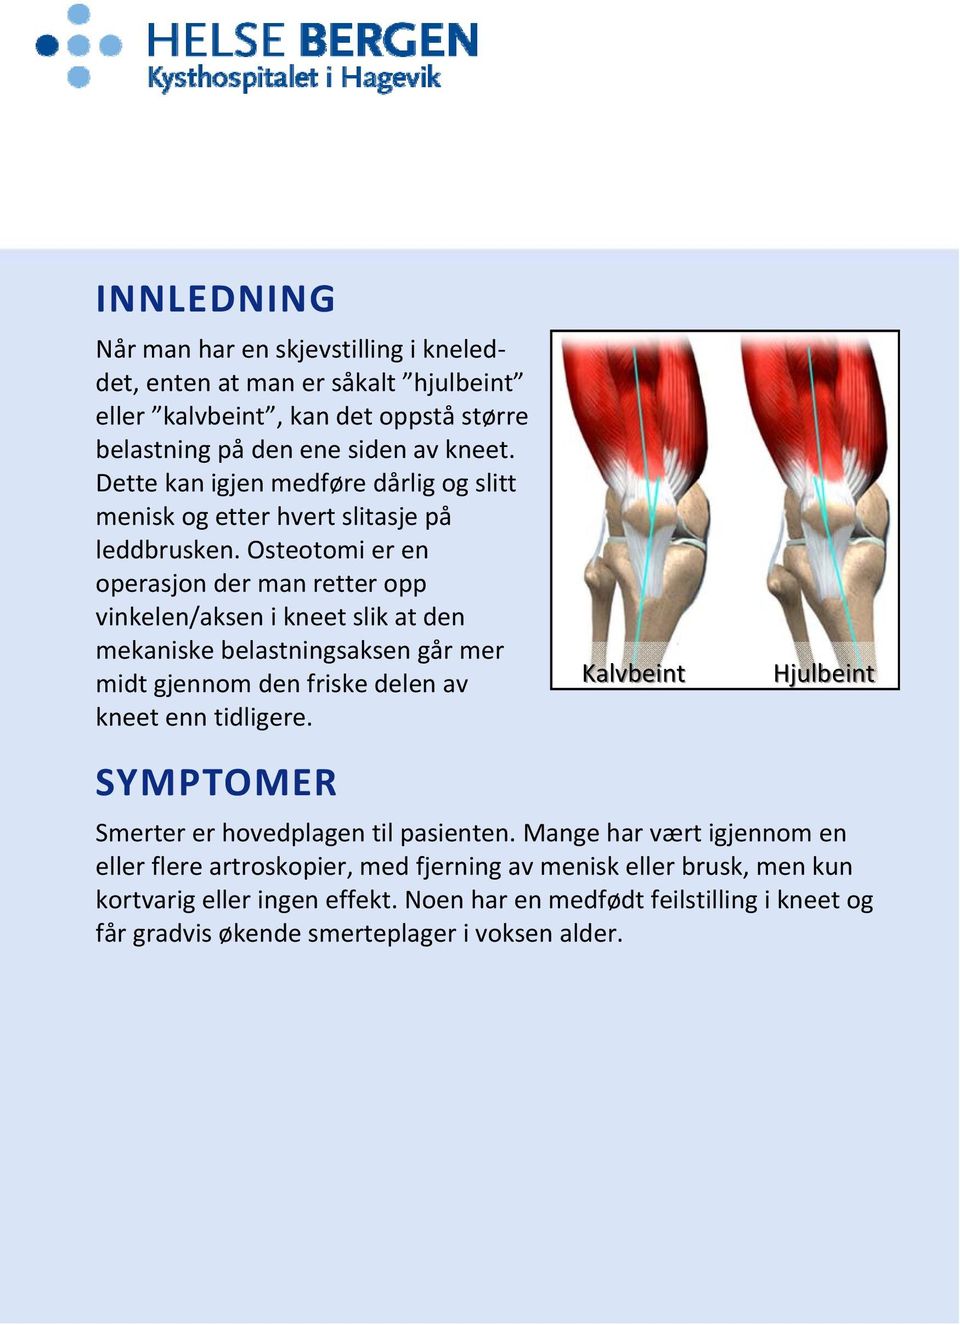 Osteotomi er en operasjon der man retter opp vinkelen/aksen i kneet slik at den mekaniske belastningsaksen går mer midt gjennom den friske delen av kneet enn tidligere.